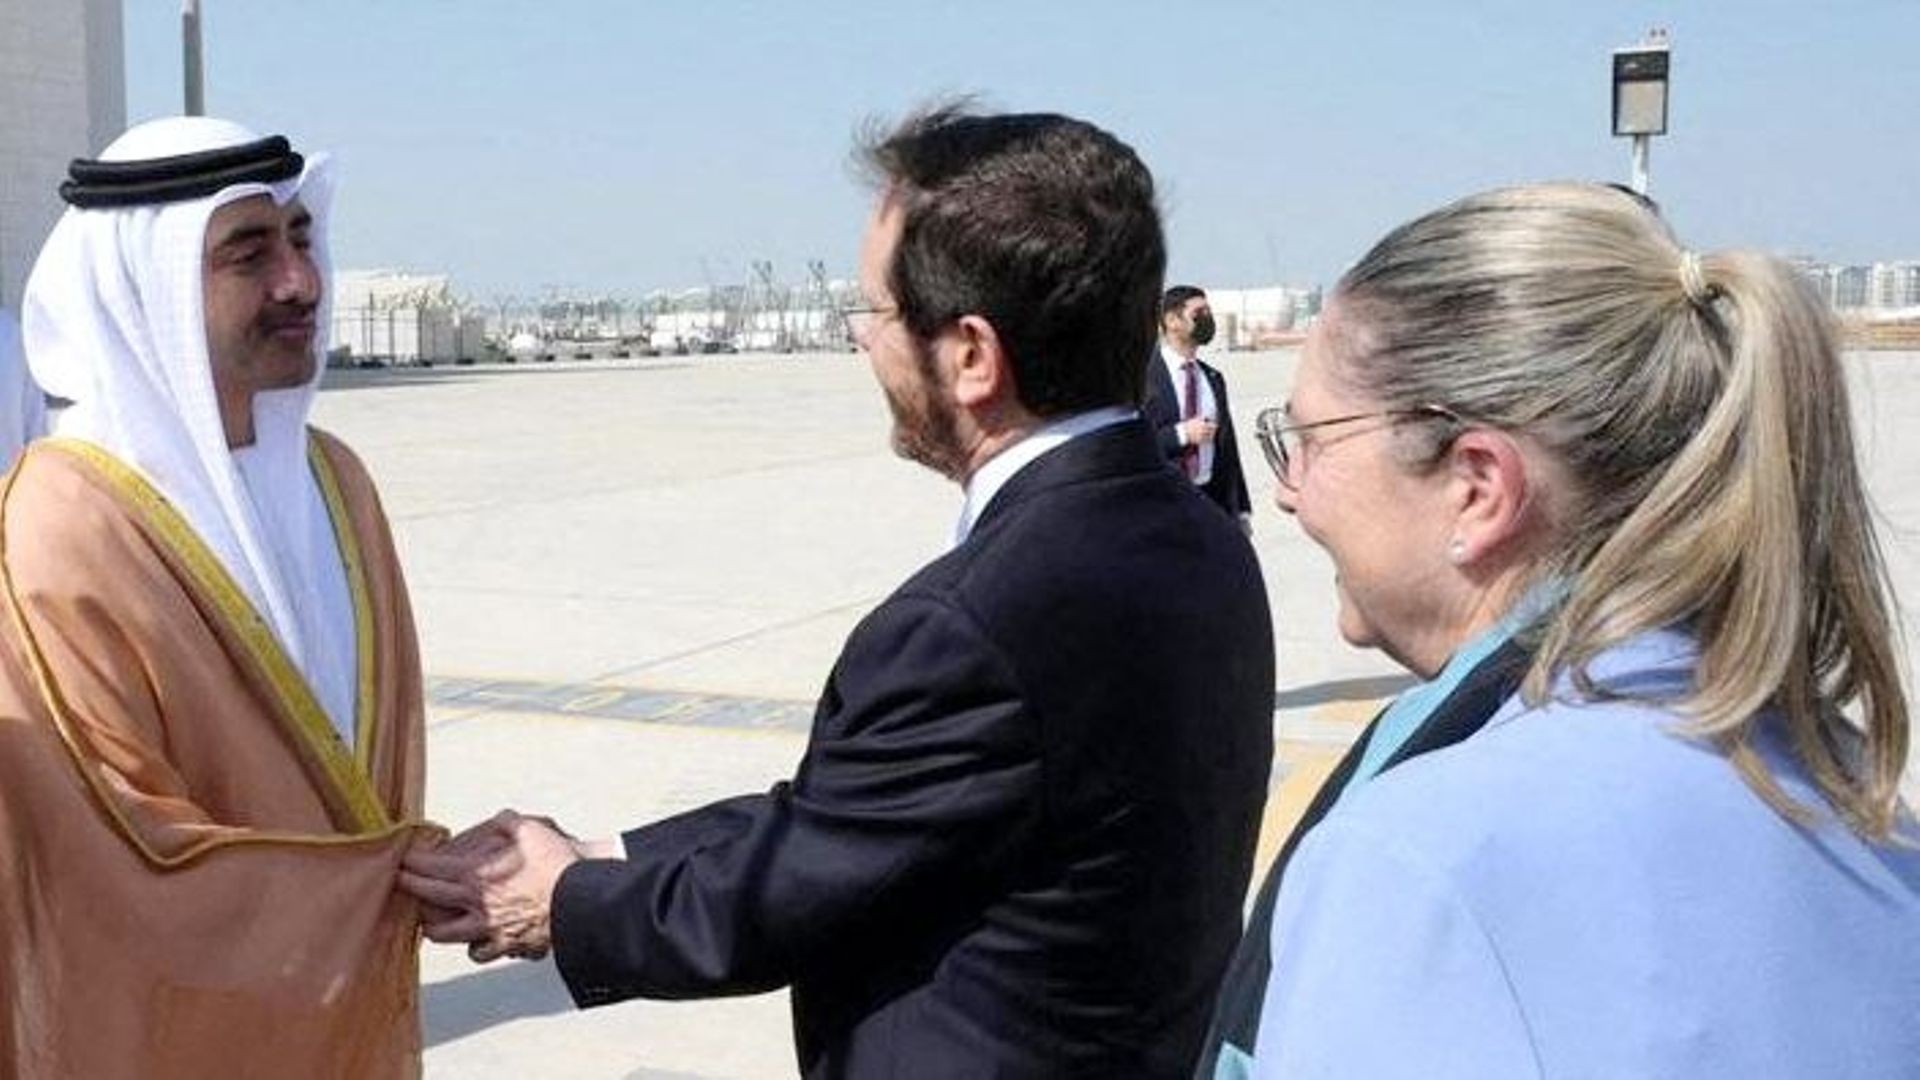 Le ministre des Affaires étrangères des Émirats arabes unis, Cheikh Abdullah bin Zayed al-Nahyan (Gauche), accueille le président israélien Isaac Herzog et la première dame Michal à leur arrivée dans la capitale émiratie Abu Dhabi, le 30 janvier 2022.